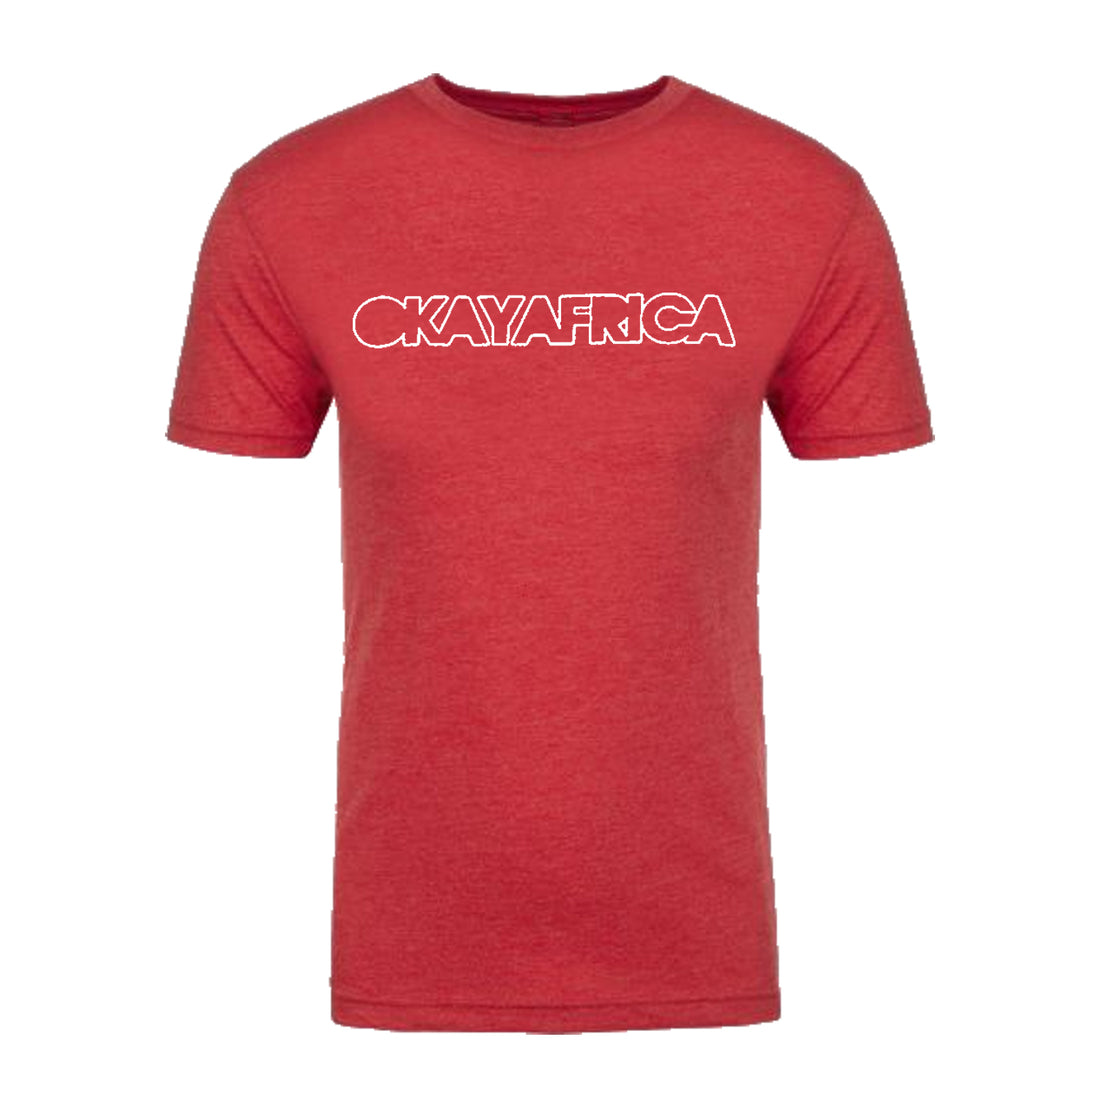 Okayafrica Outline T-Shirt (Small)